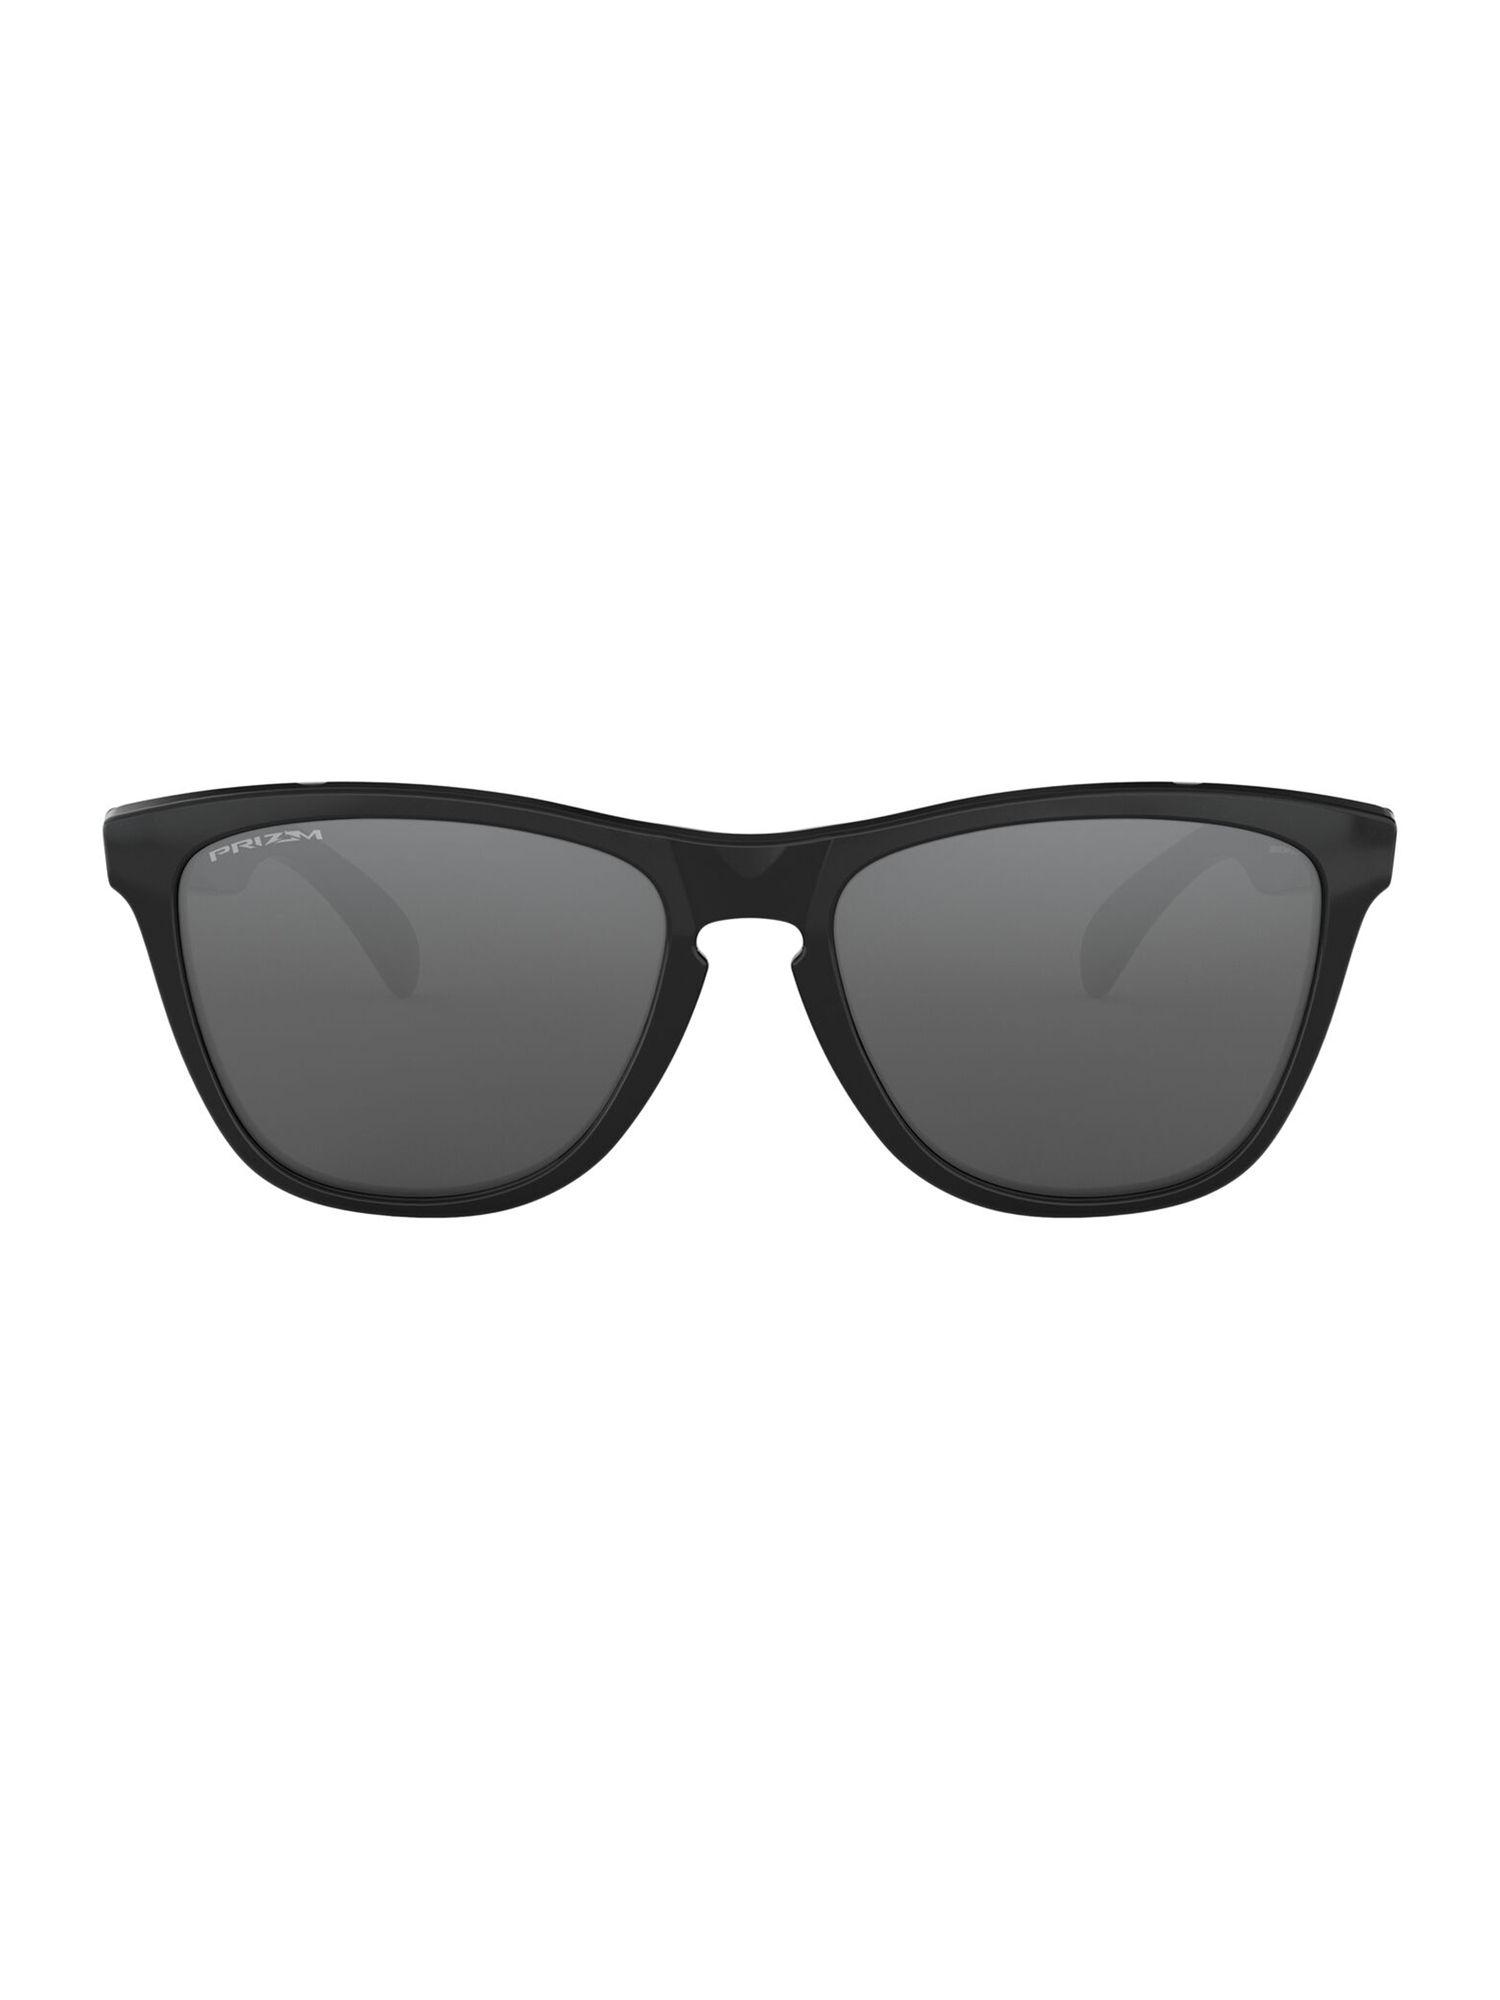 polished-black-sunglasses(0oo9013i|square-|black-frame|grey-lens-|55-mm-)